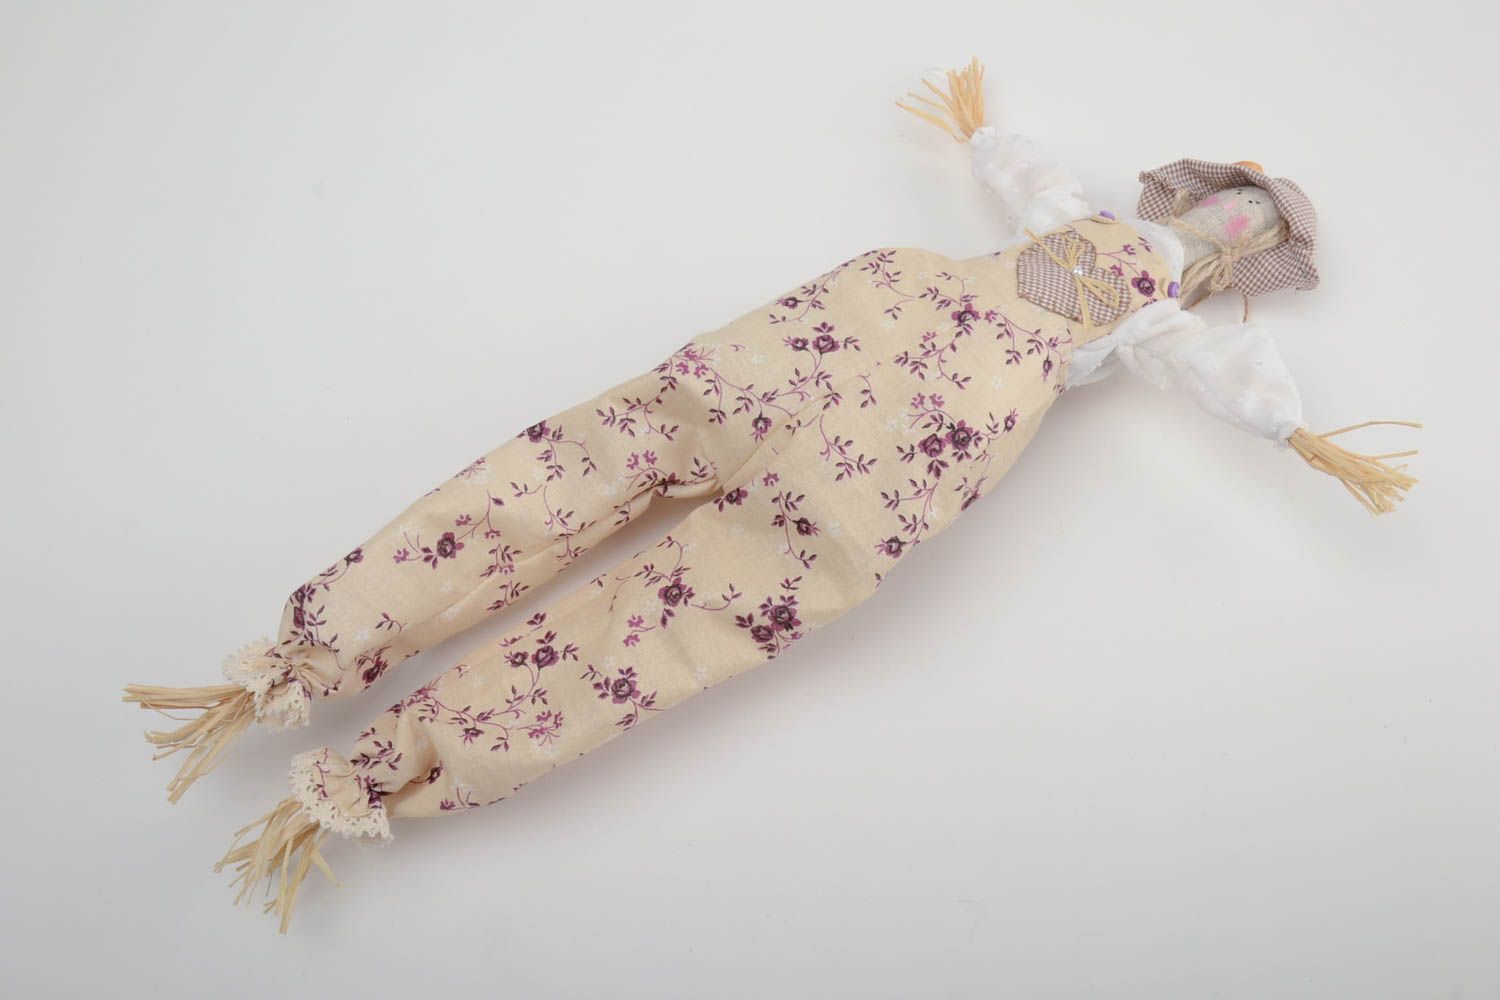 Мягкая игрушка с петелькой подвеска кукла из ситца и хлопка Пугало хенд мэйд фото 2